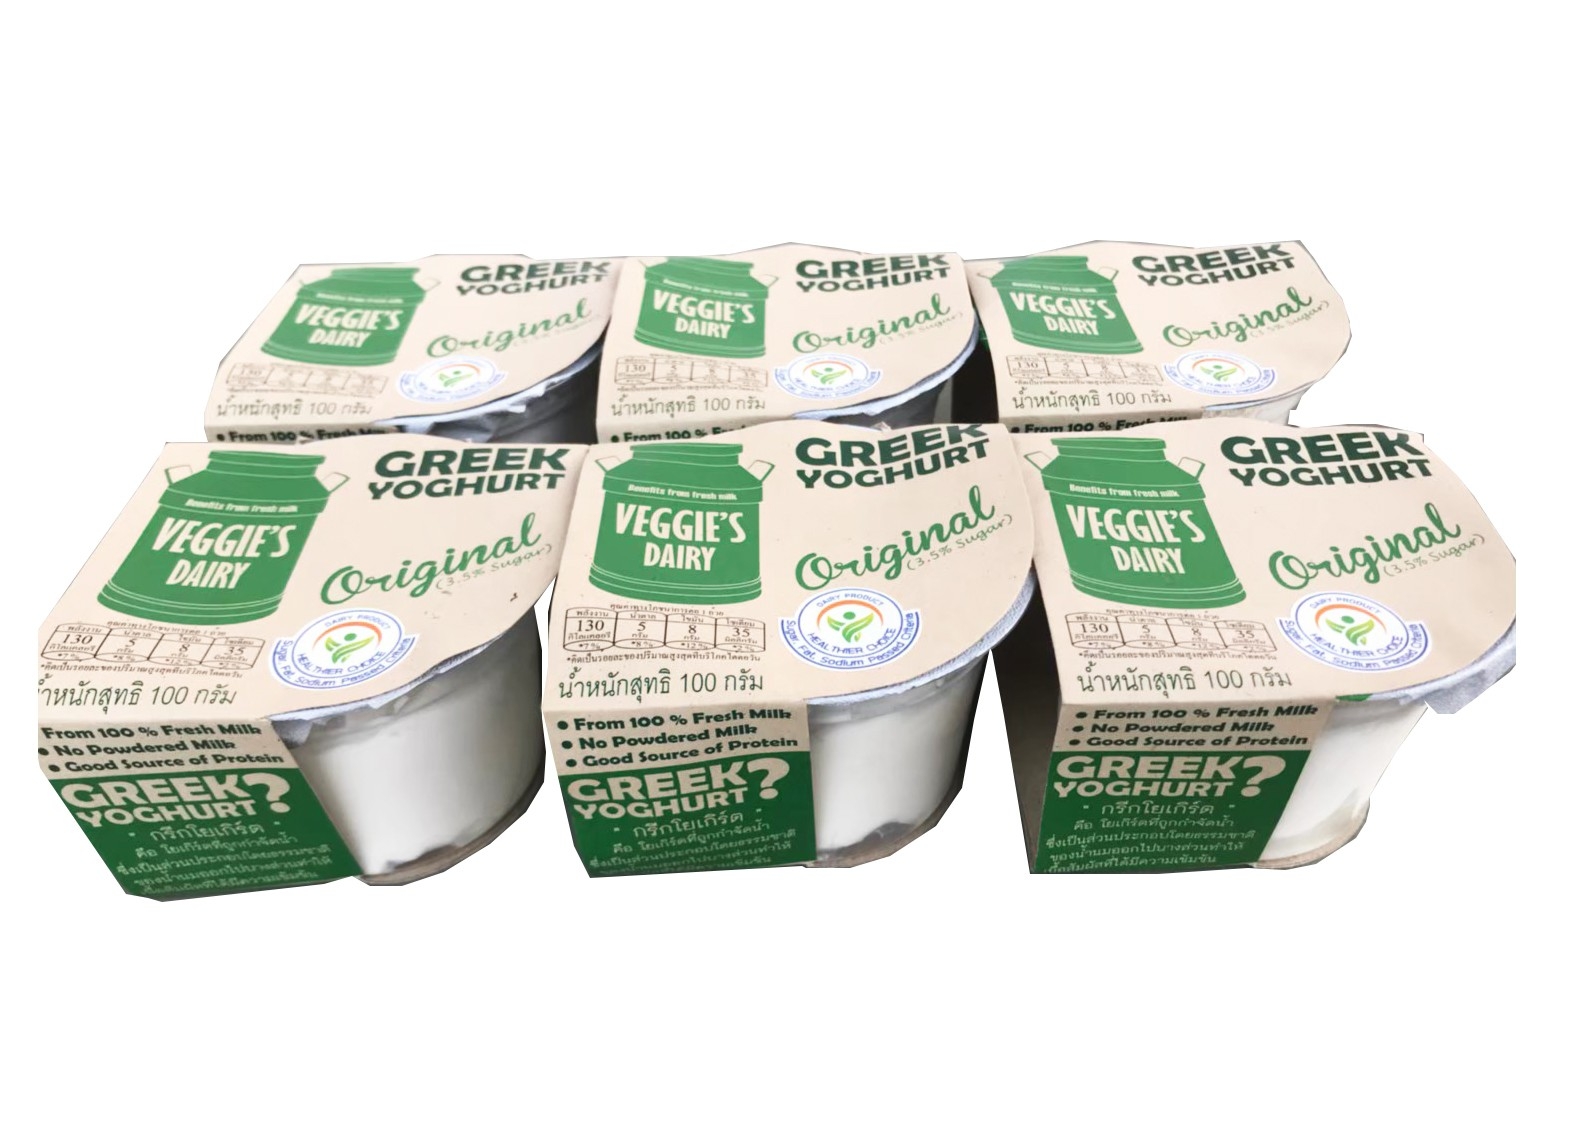 กรีกโยเกิร์ต เวจจี้ส์แดรี่  100 กรัม แพค 6 ถ้วย สูตรออริจินัล Veggie’s Dairy Greek Yoghurt 100 g 6 Cups Original Formula